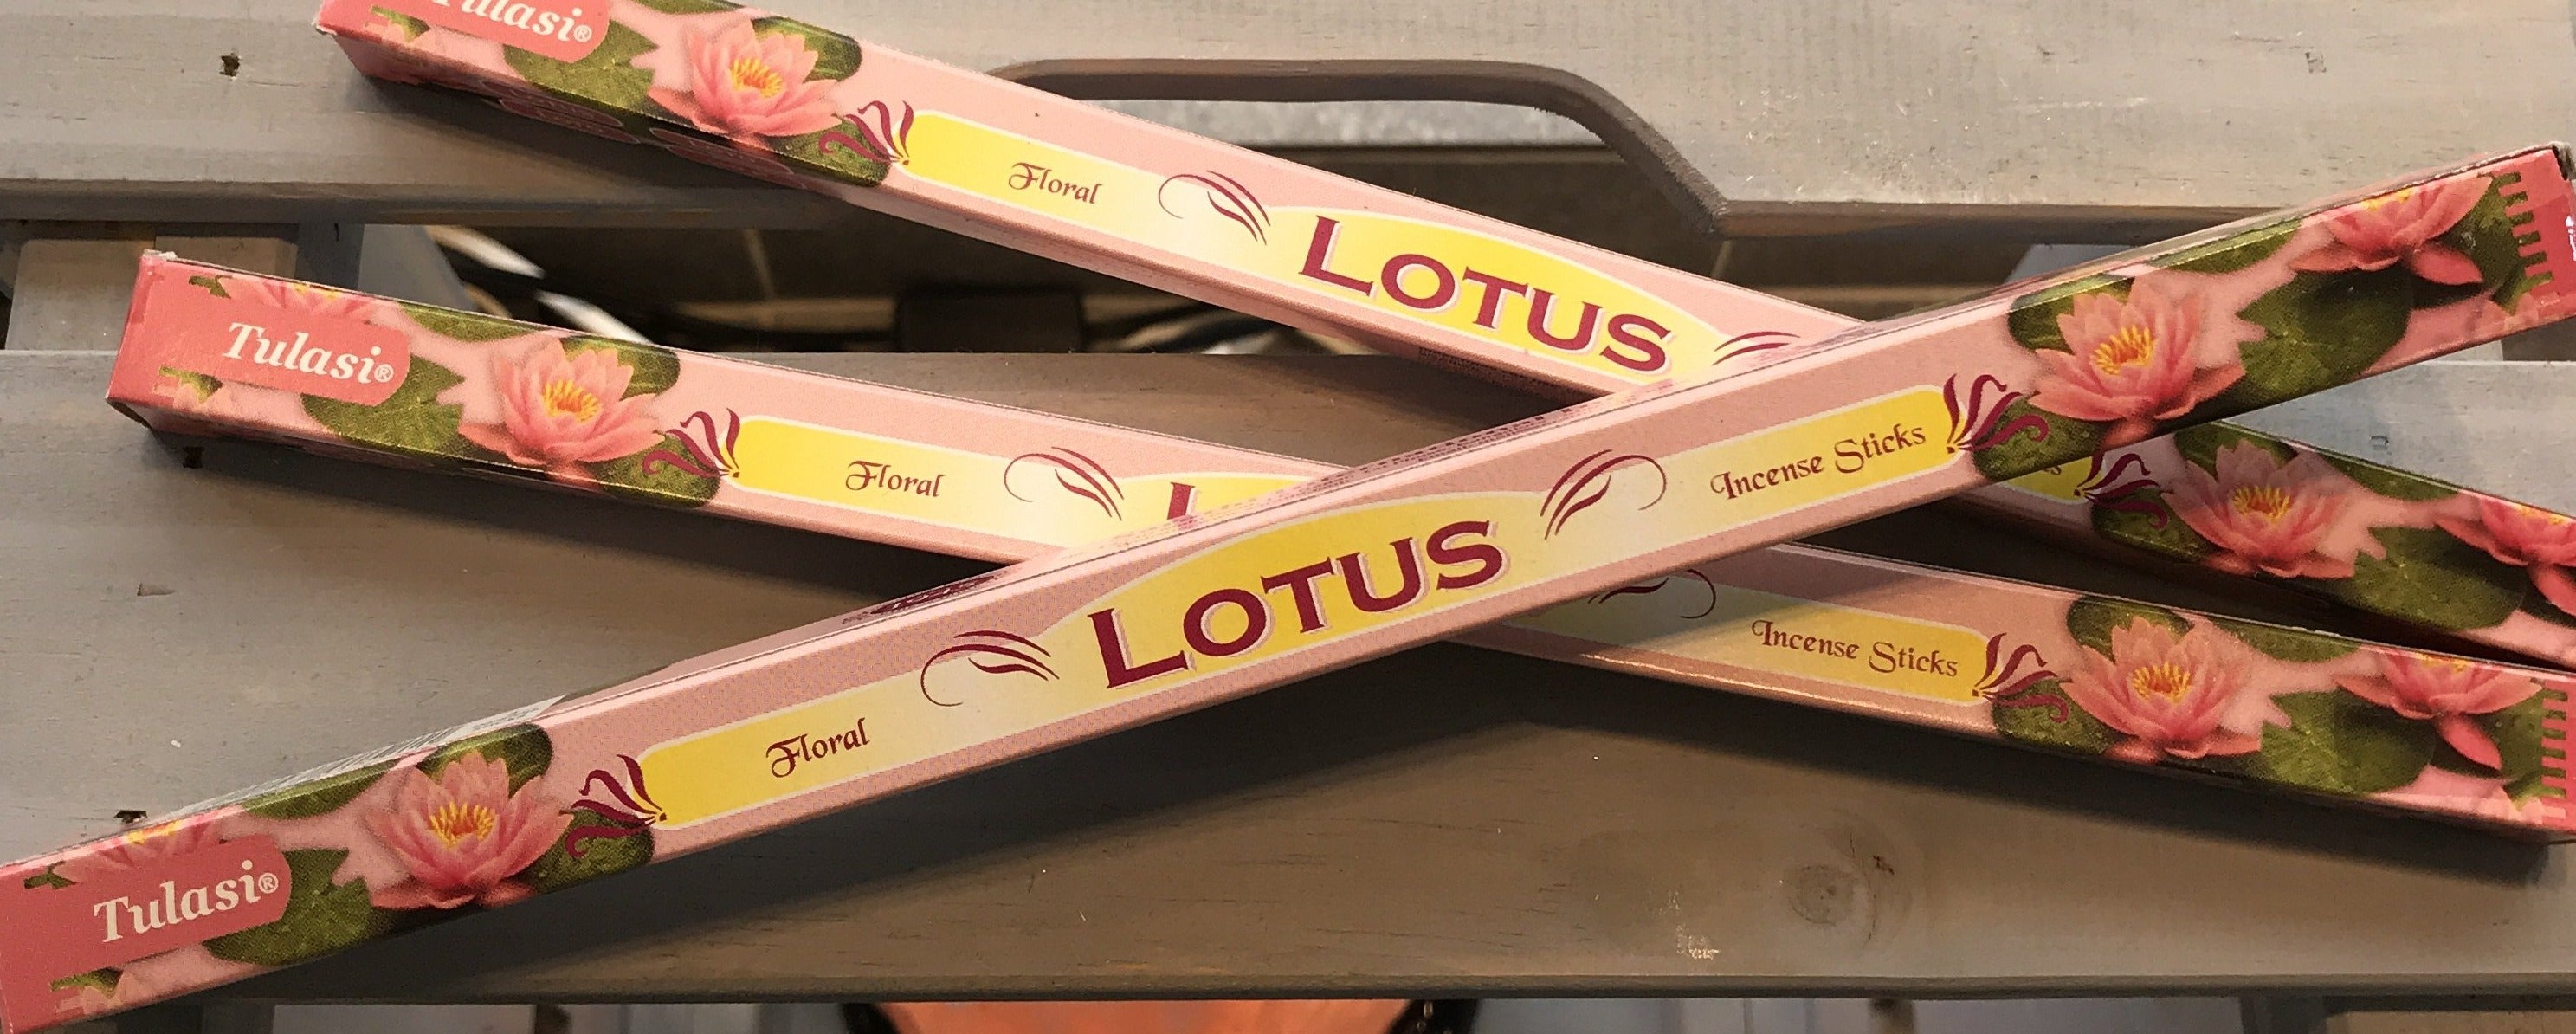 Tulasi Lotus (8 / 20 sticks)